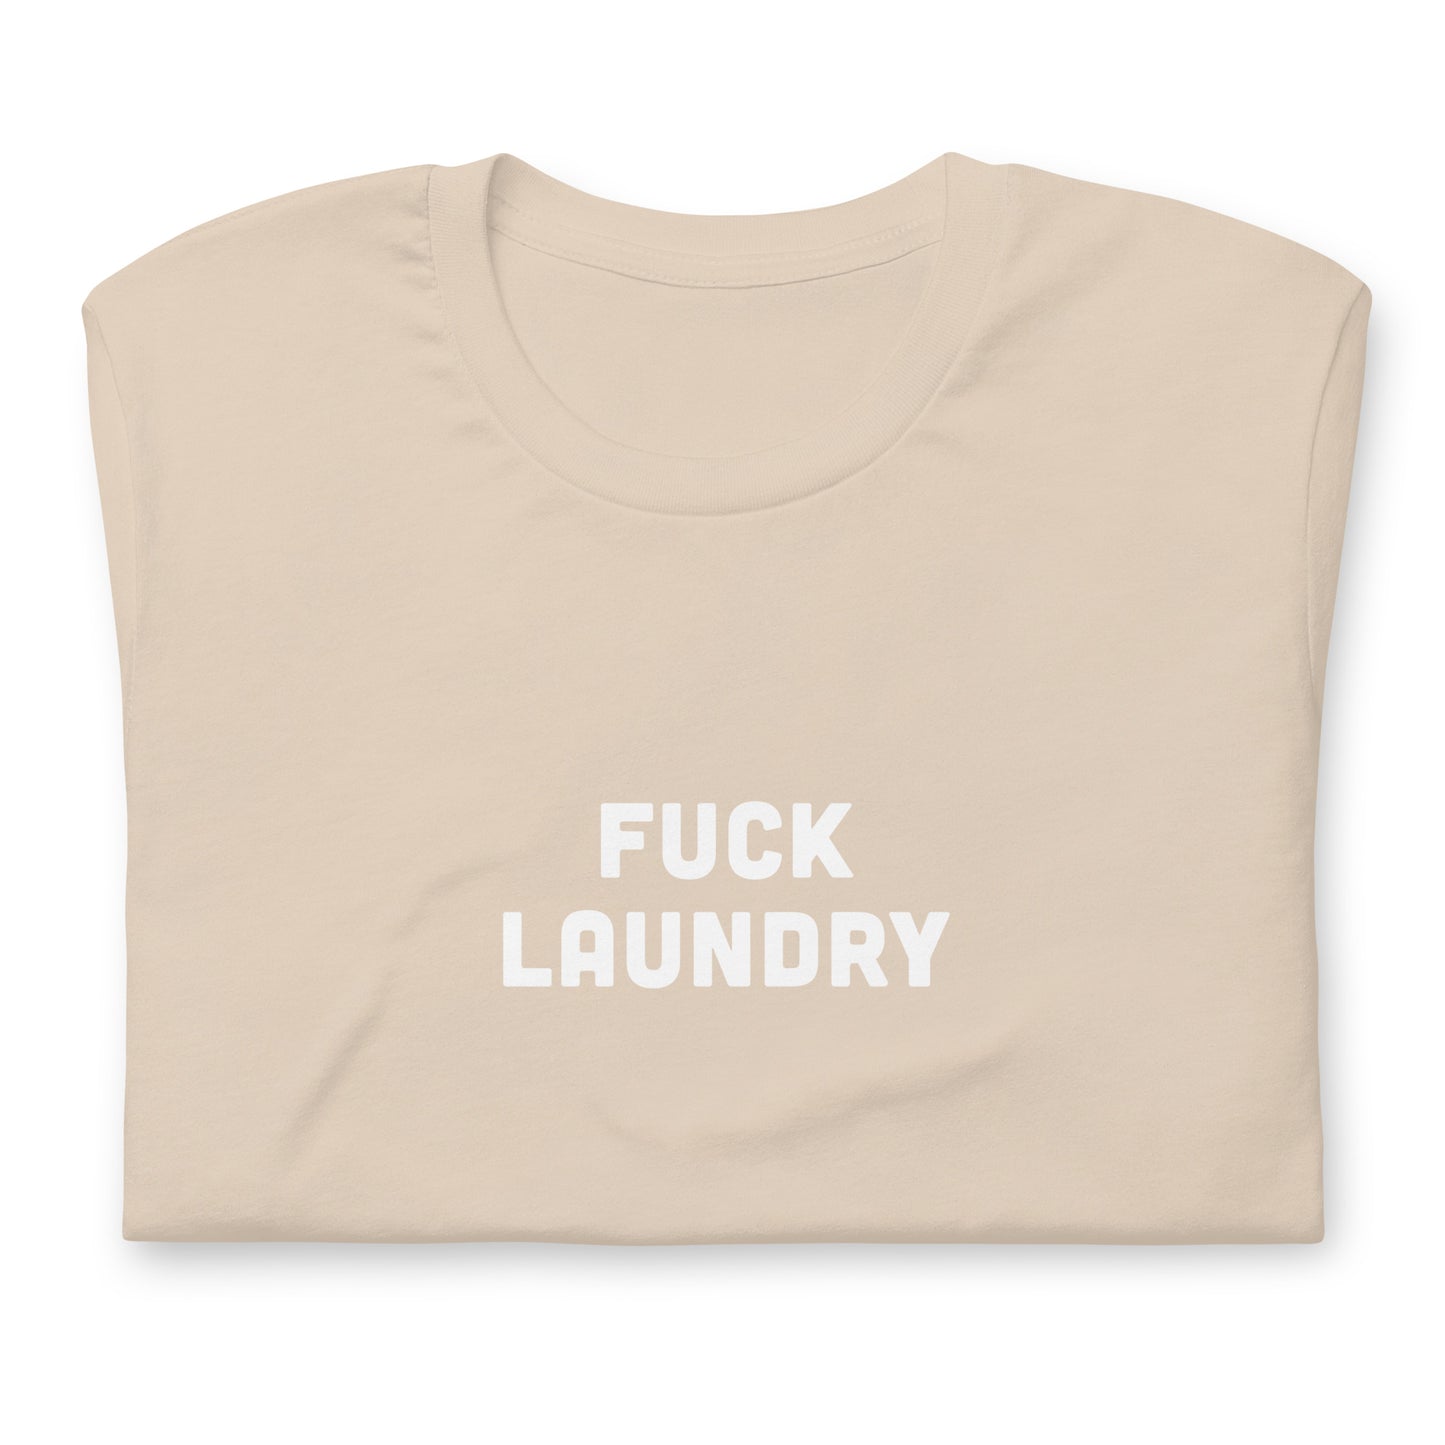 Fuck Laundry T-Shirt Size XL Color Asphalt